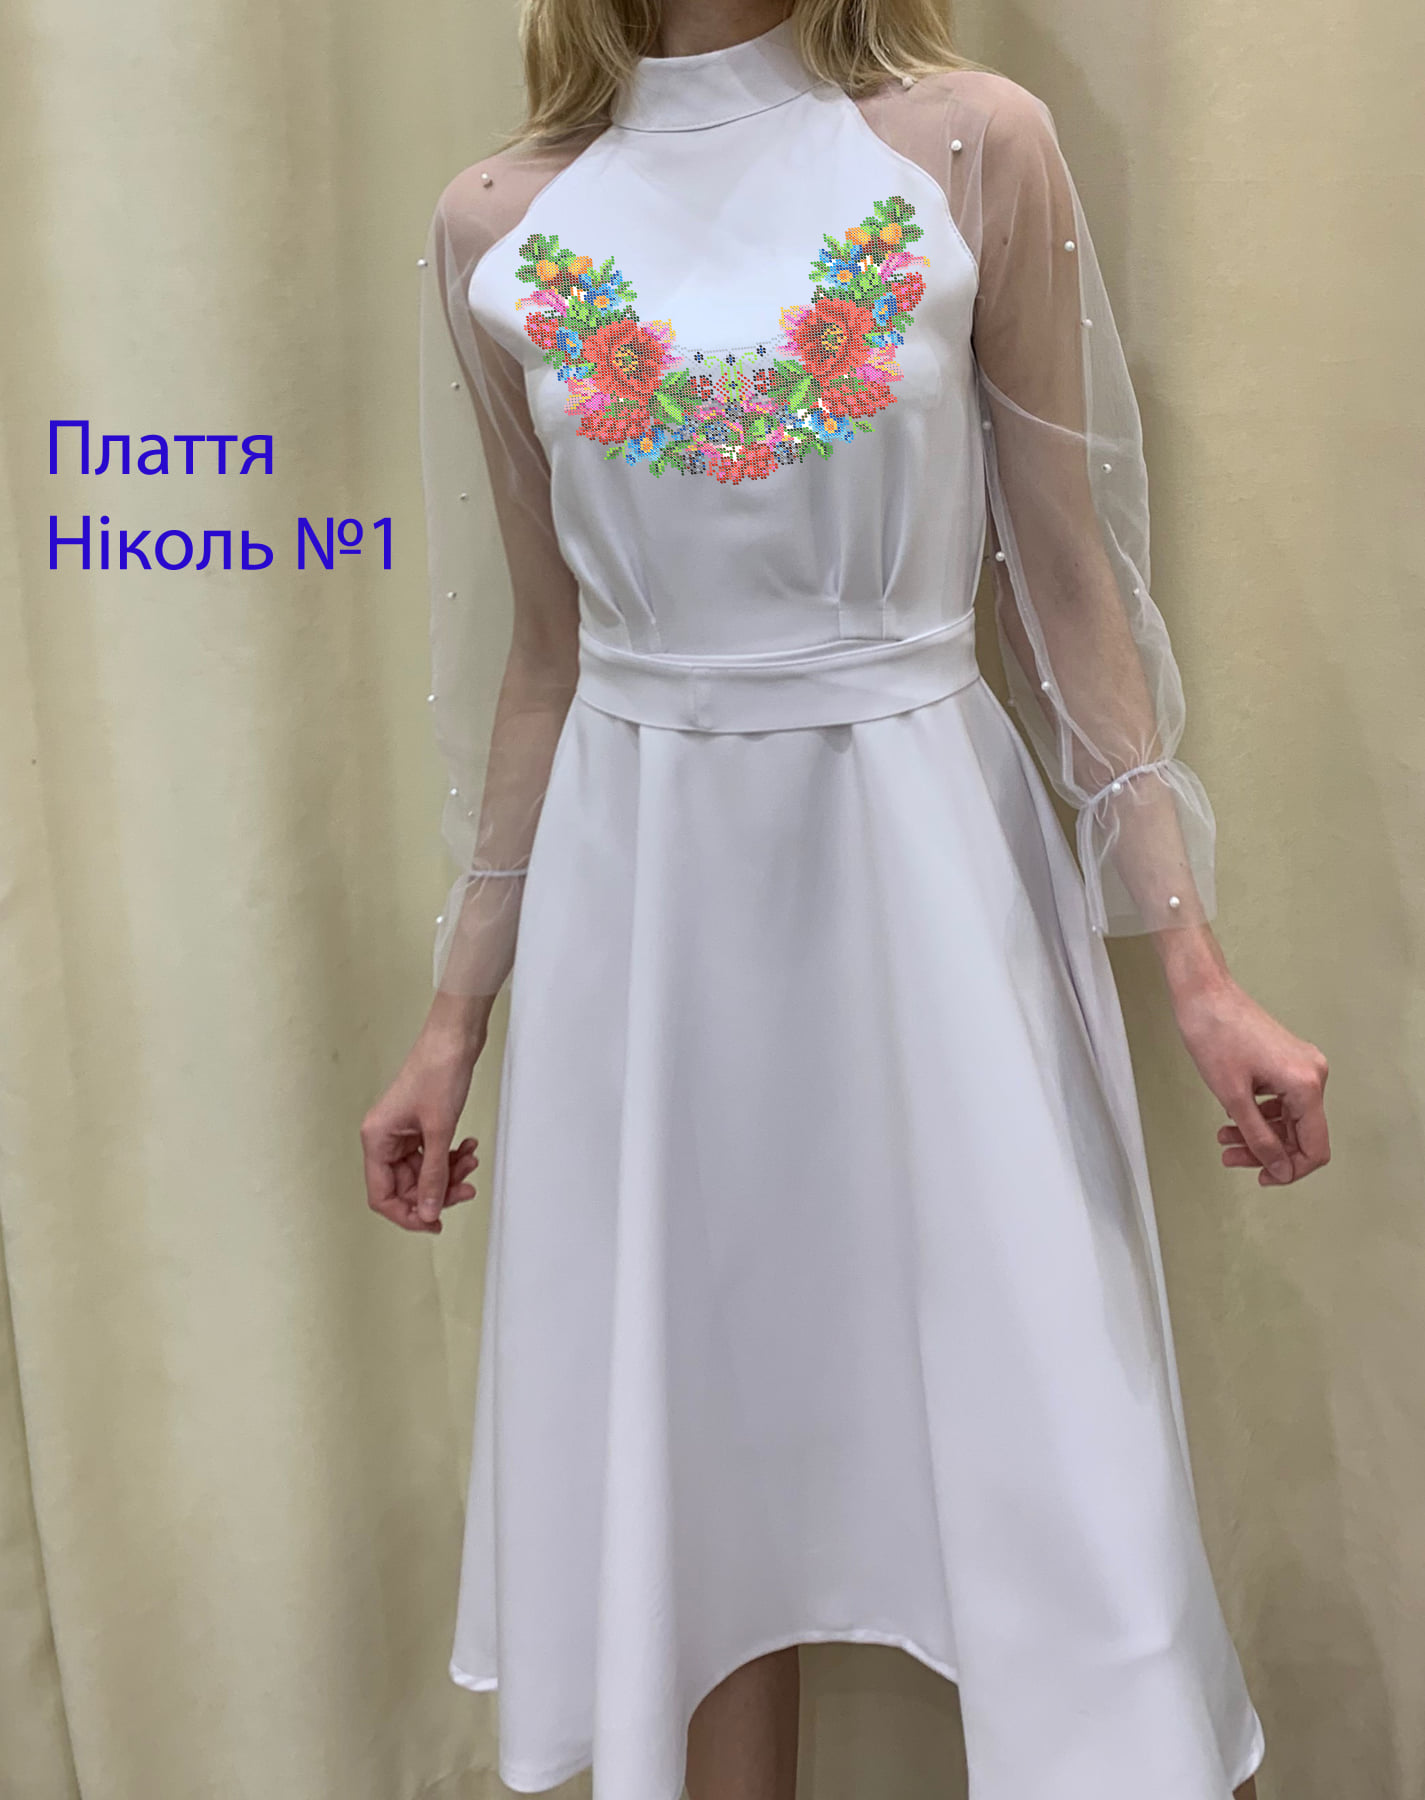 Пошита жіноча сукня для вишивки Ніколь №1